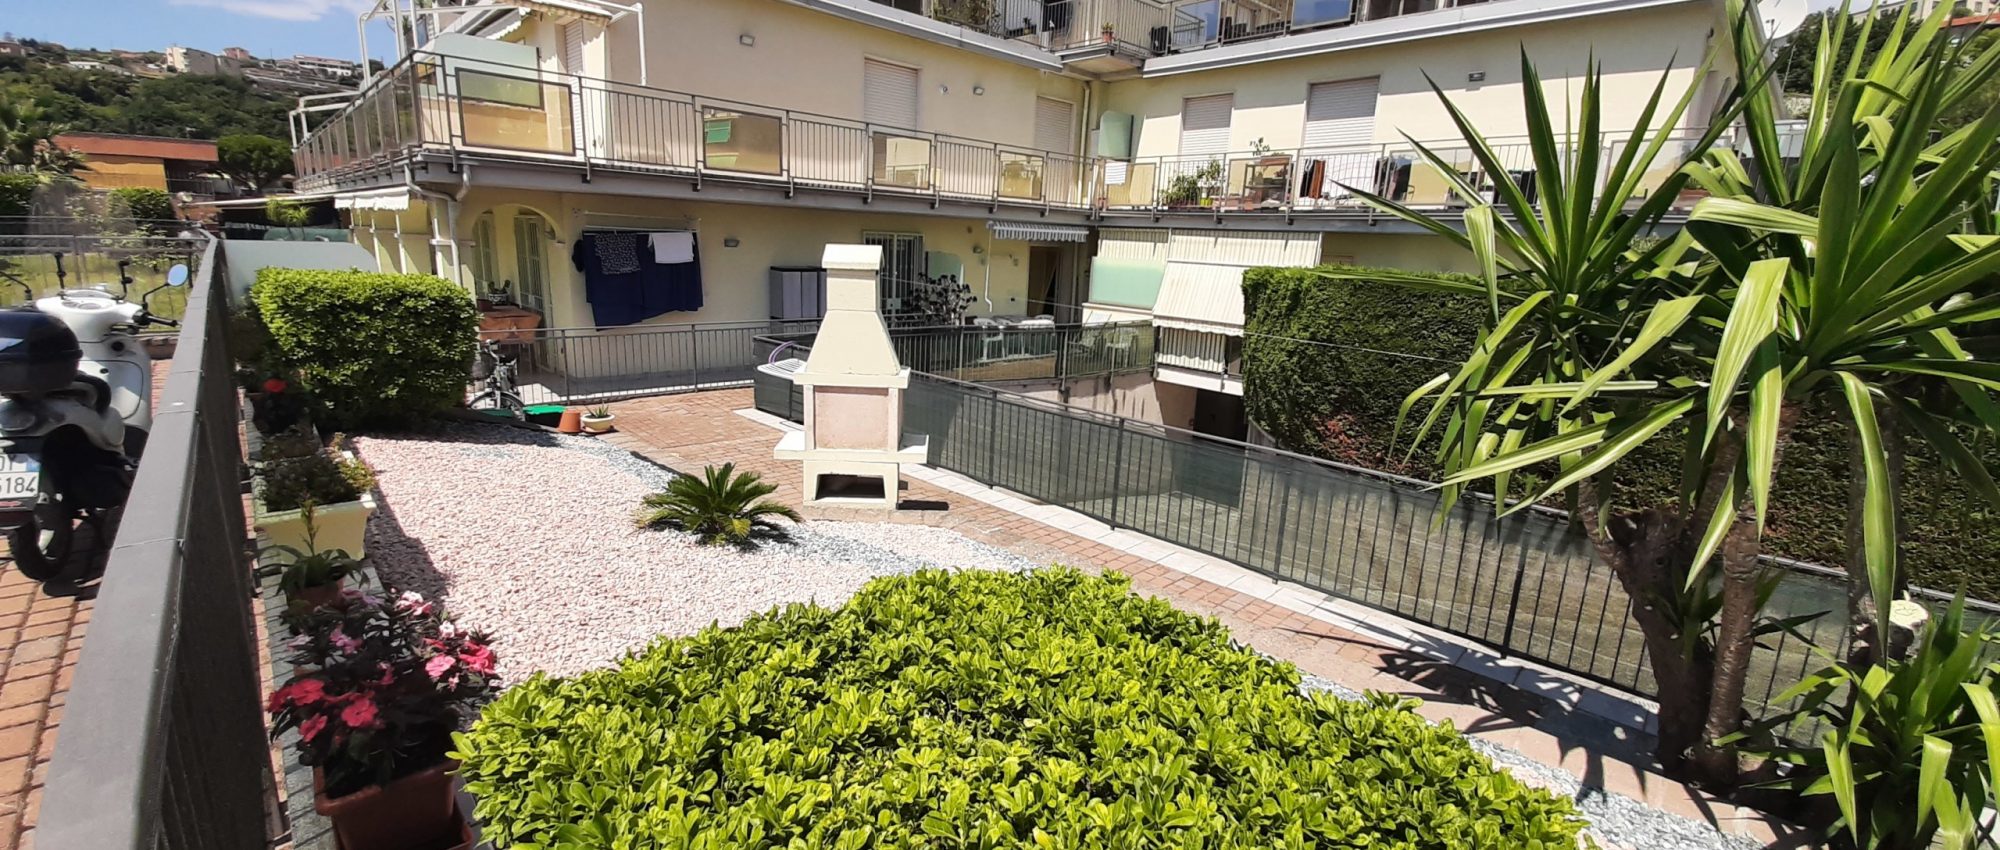 POSTEGGIO E GIARDINO – Appartamento Monolocale a Sanremo